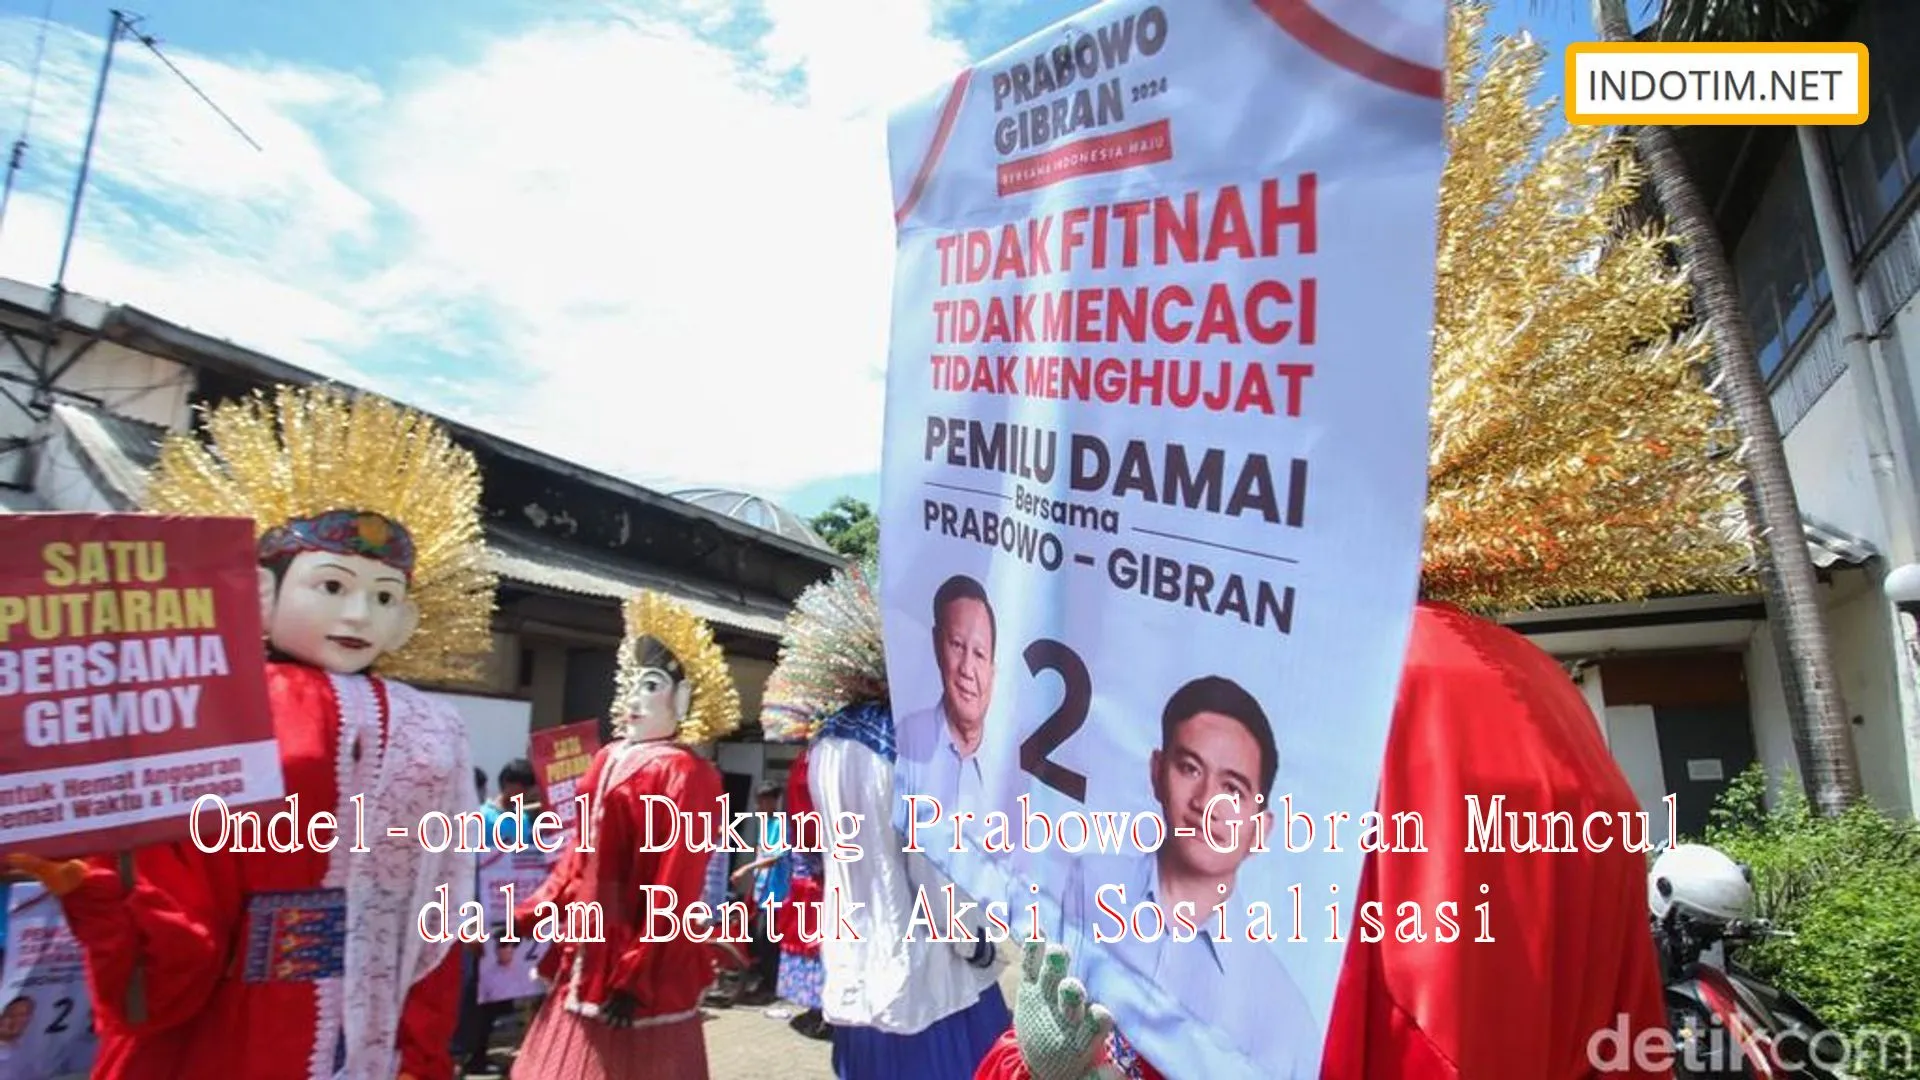 Ondel-ondel Dukung Prabowo-Gibran Muncul dalam Bentuk Aksi Sosialisasi